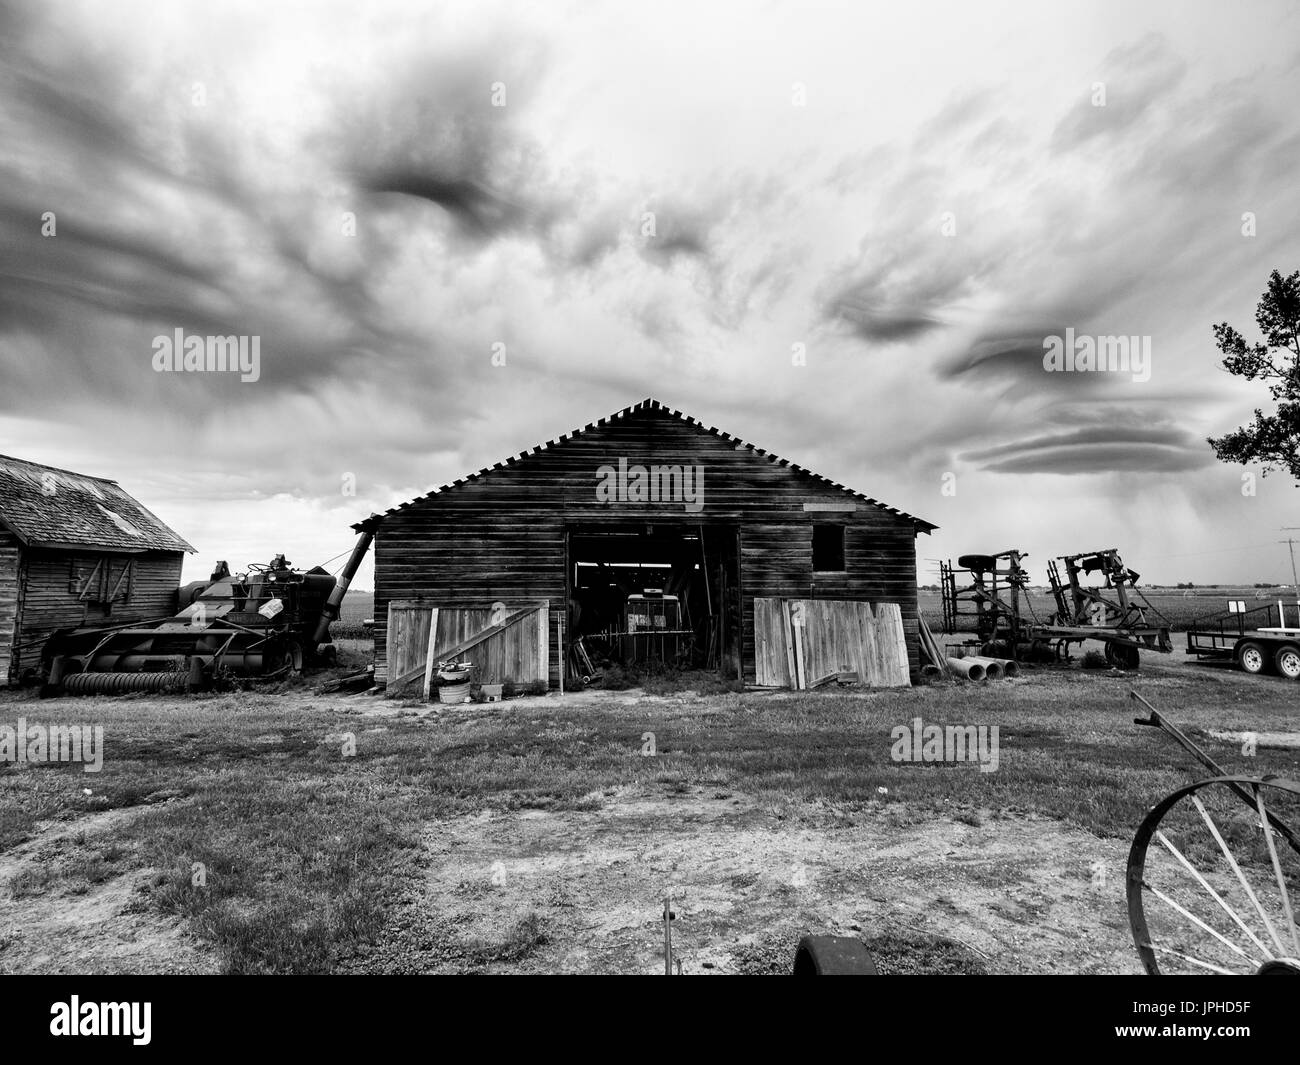 Version noir et blanc de la chambre de stockage à la ferme, avec des ciels de pluie Contexte : Banque D'Images